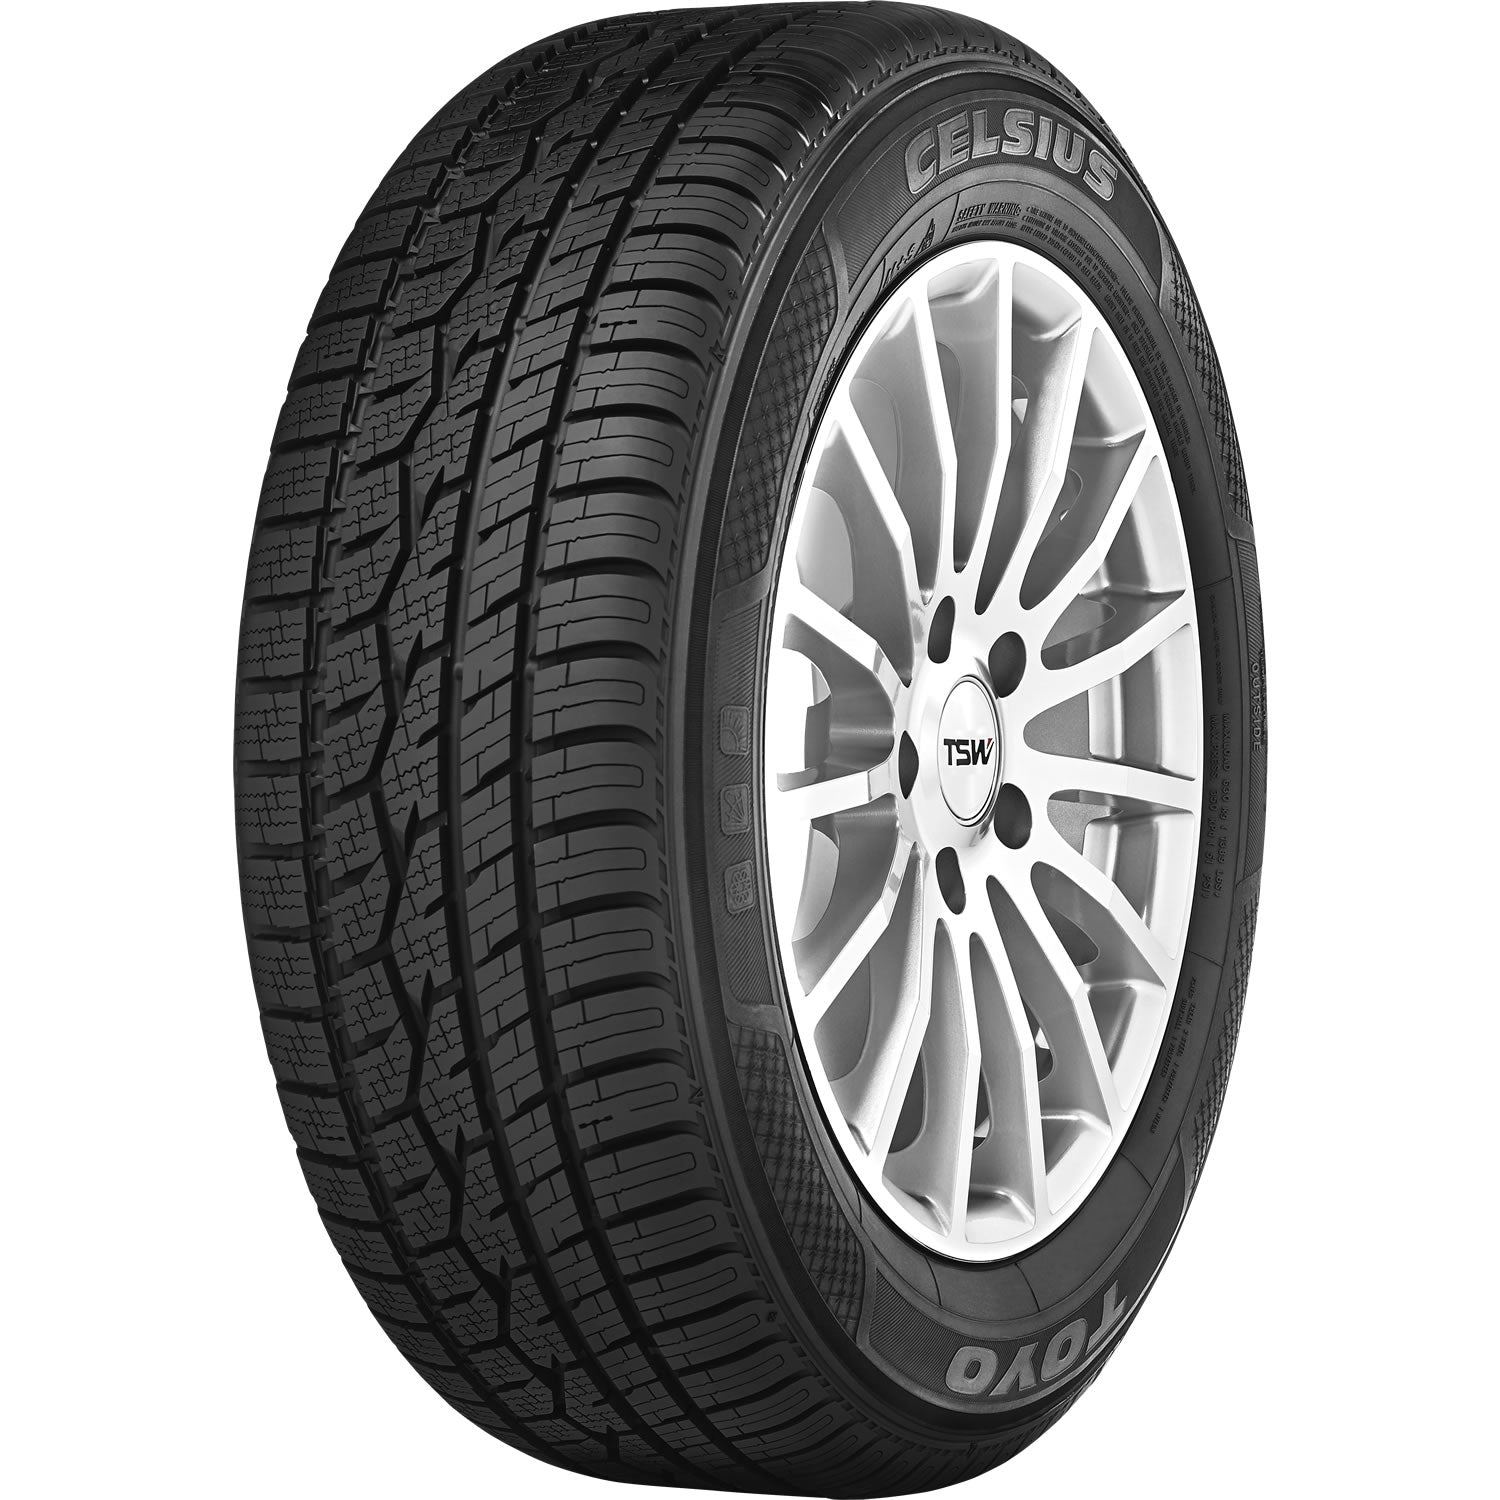 TOYO TIRES CELSIUS 225/55R17 (26.8X8.9R 17) Tires